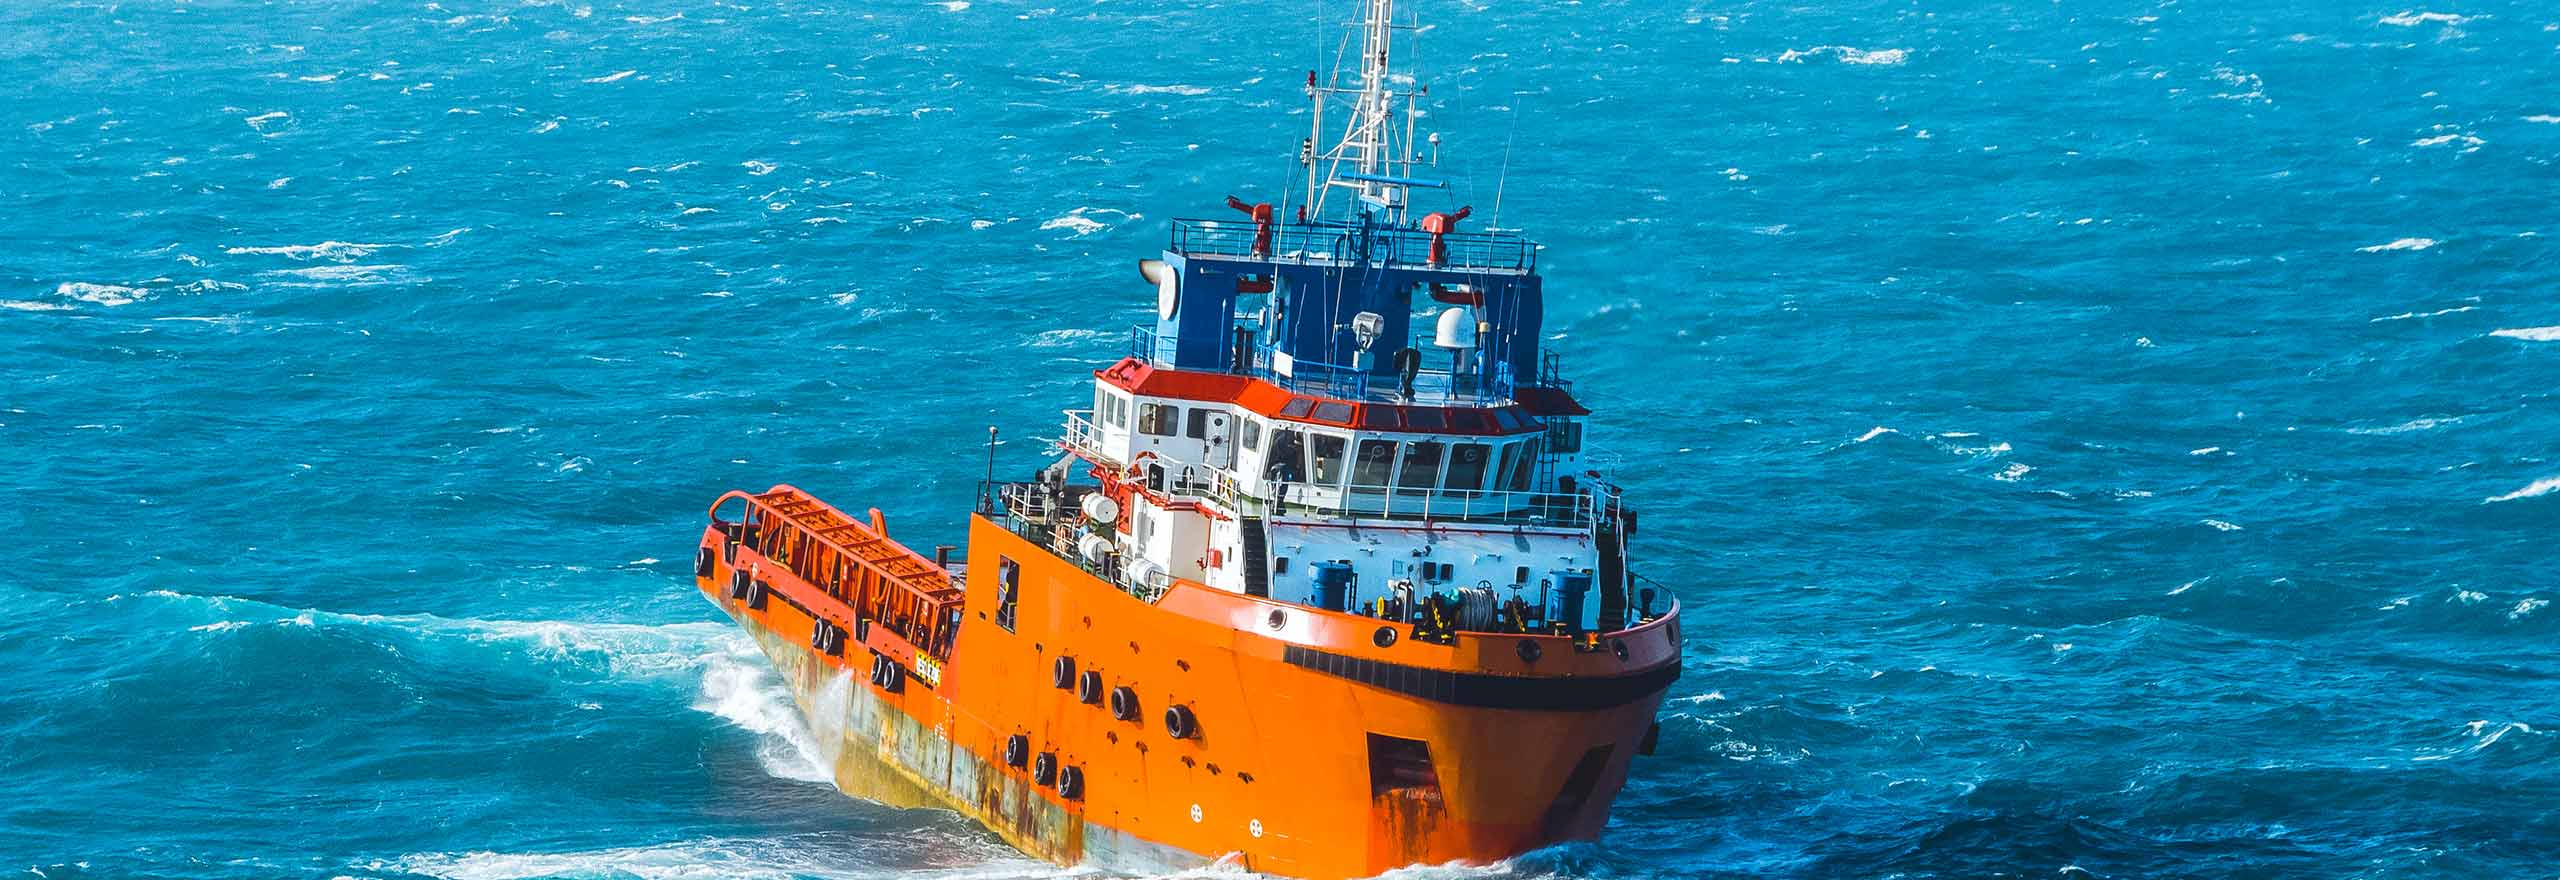 Un'imbarcazione per indagini idrografiche che naviga in mare aperto